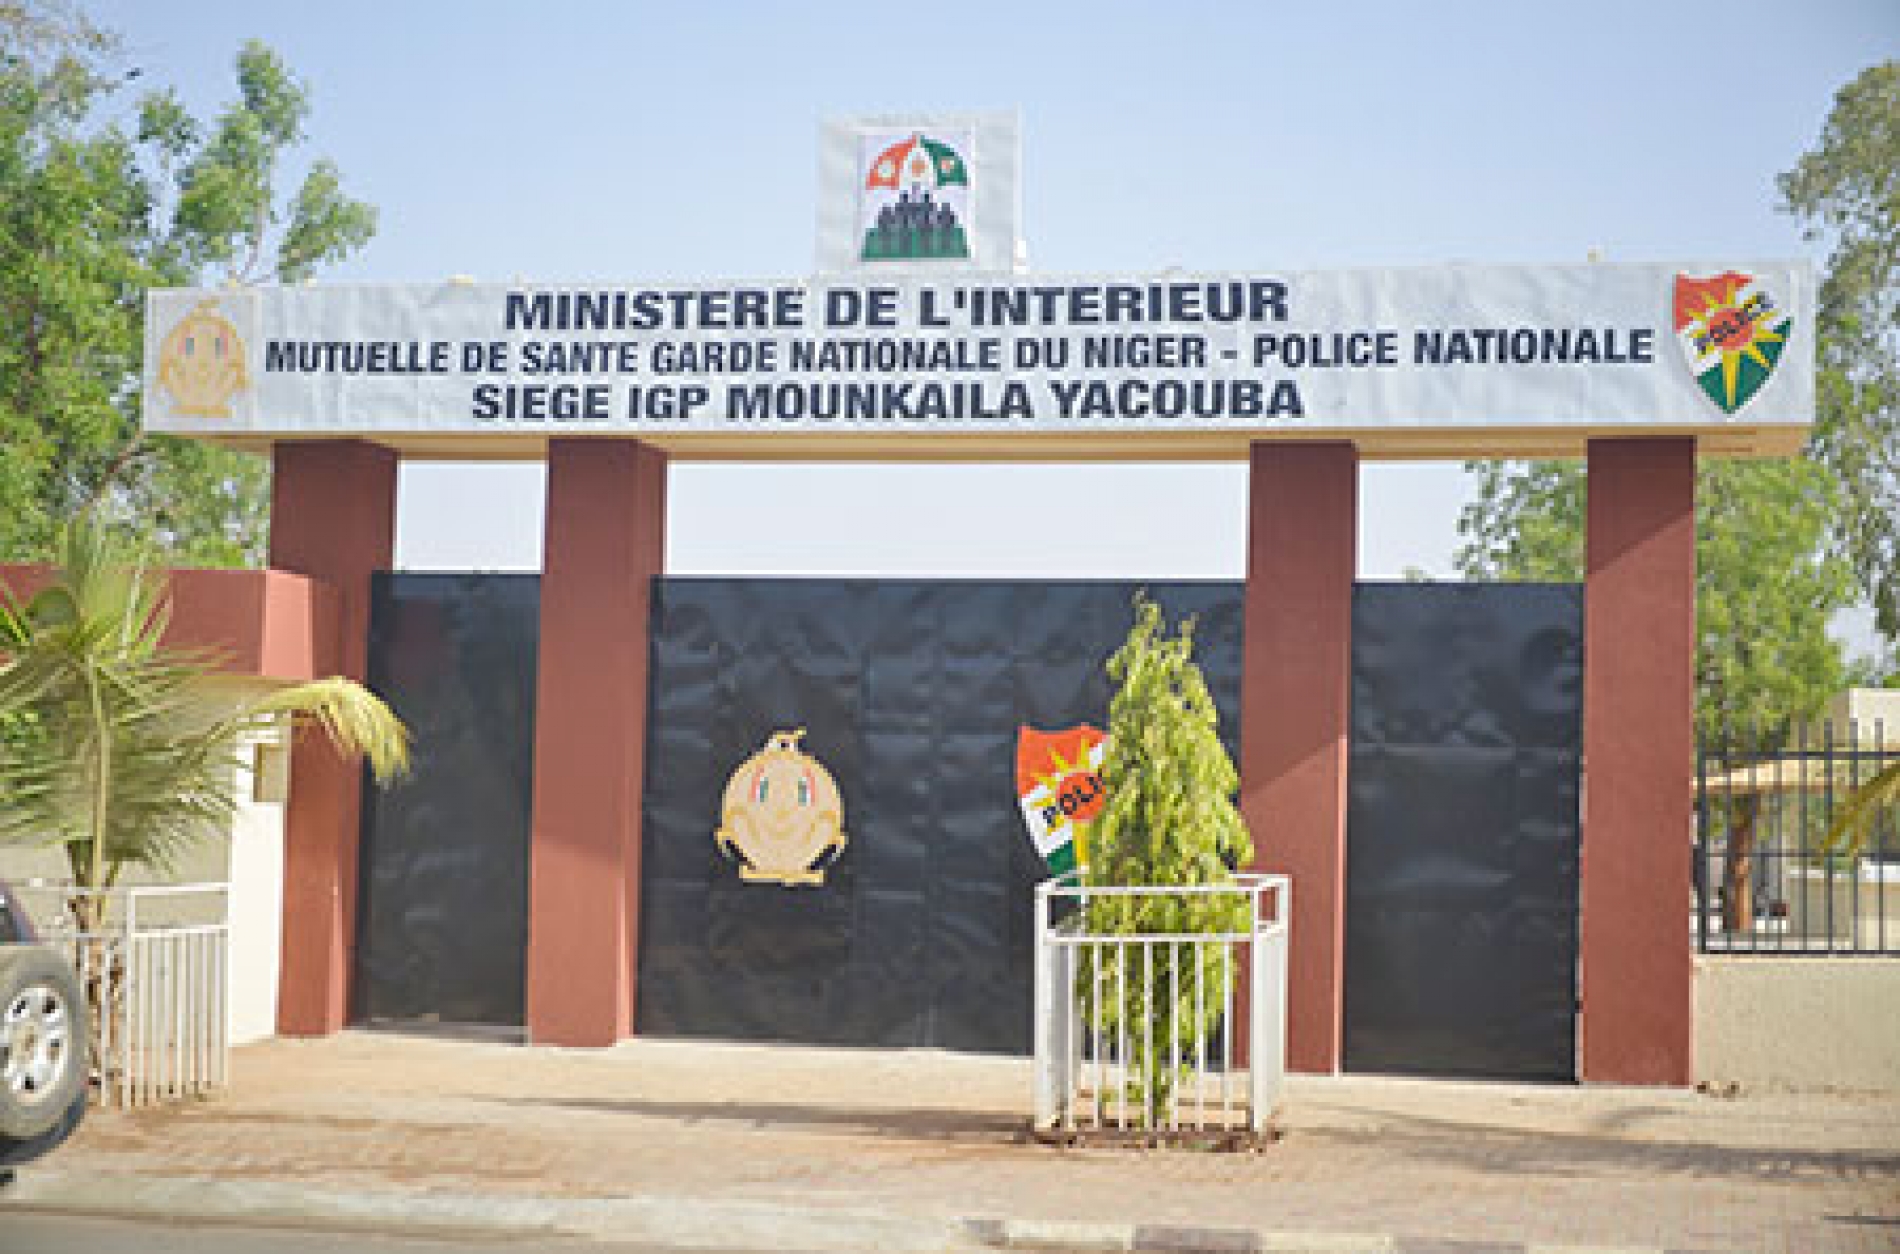 Inauguration du siège de la mutuelle de santé Garde Nationale du Niger et Police Nationale : Le siège de la mutuelle baptisé «Mounkaila Yacouba»